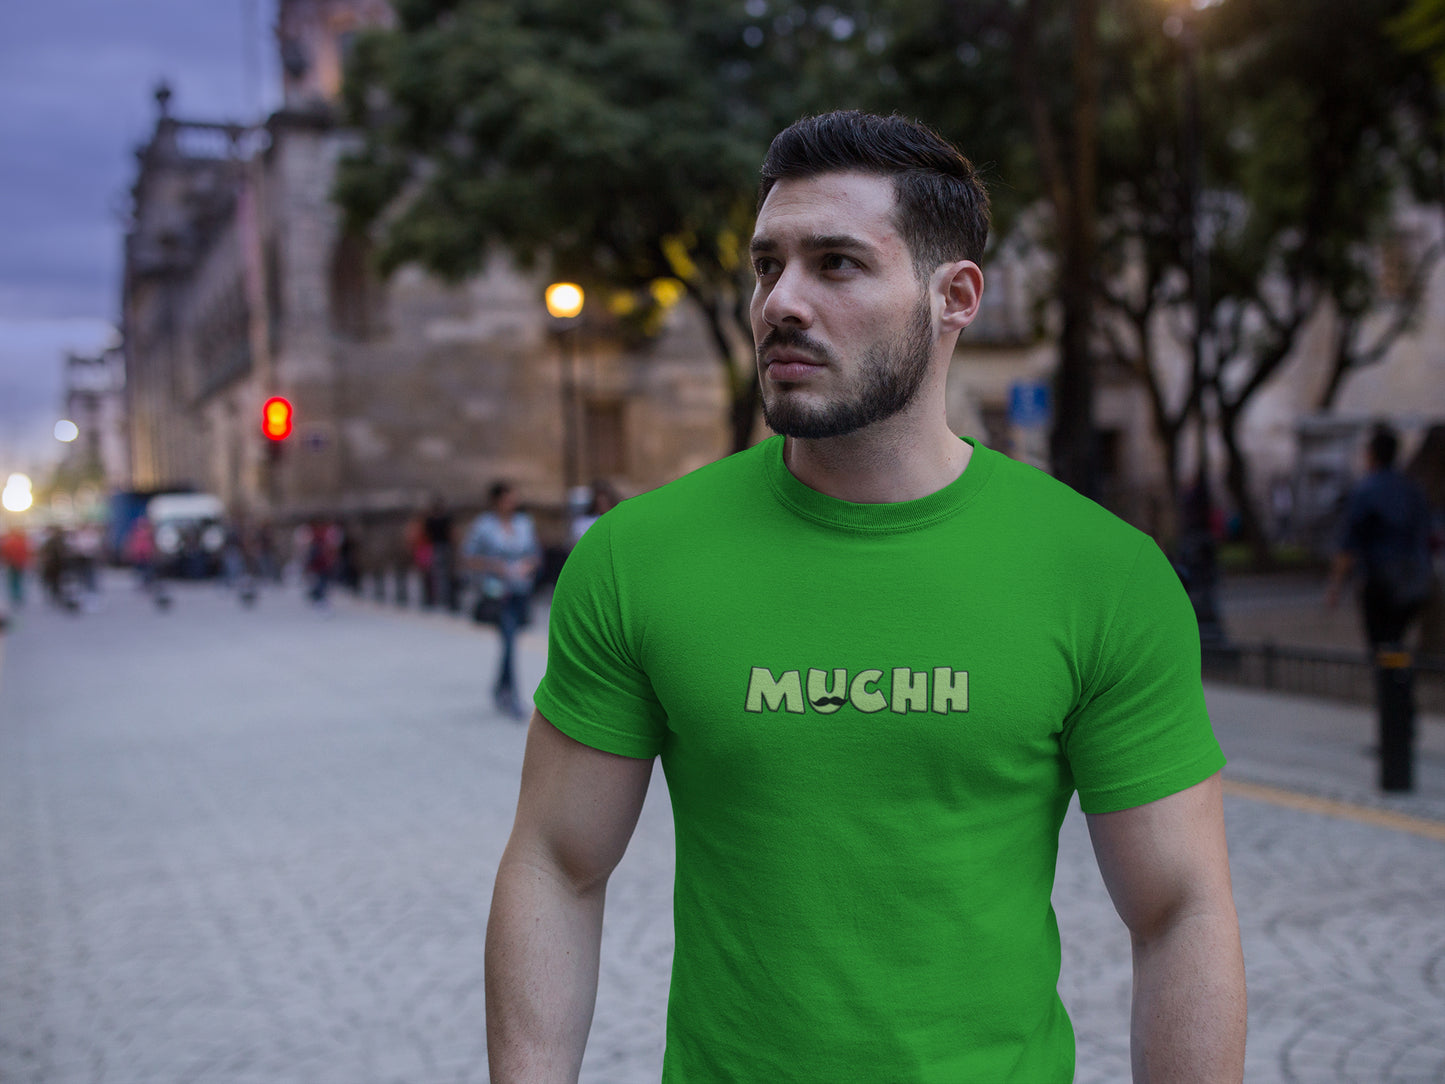 Muchh Summer T-shirt for Men